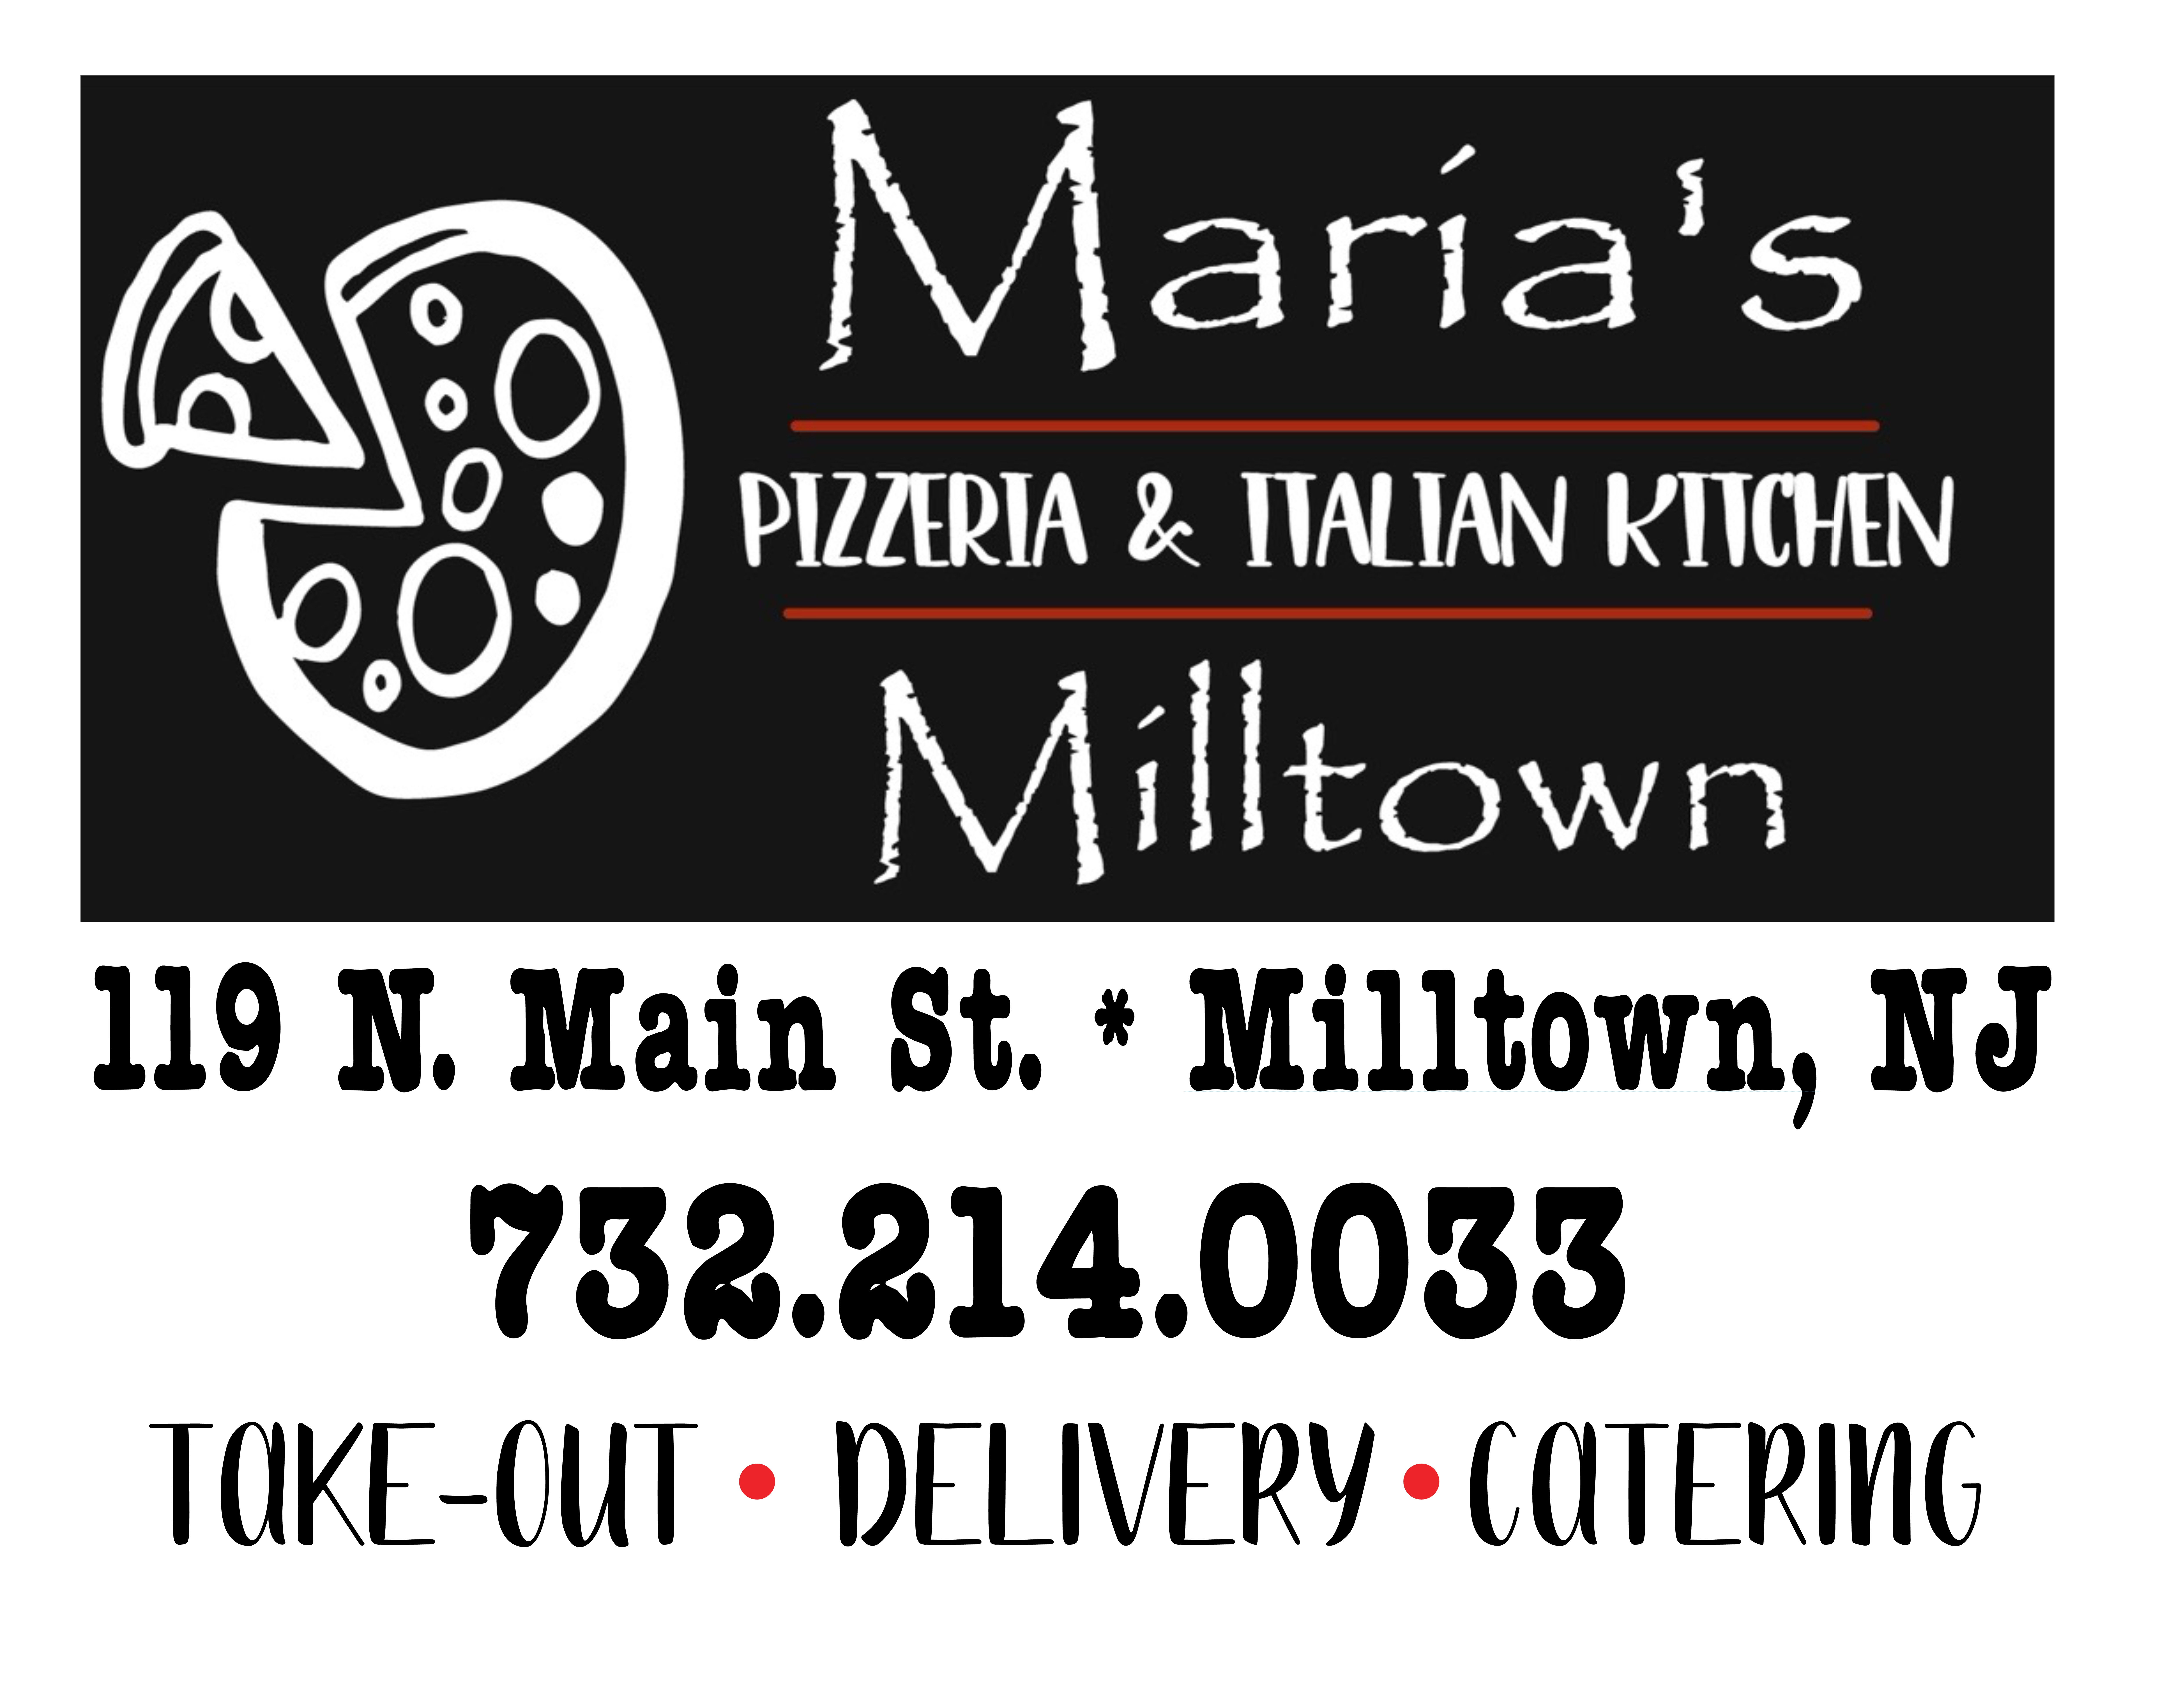 Maria's Pizza & Italian Kitchen Milltown 08850